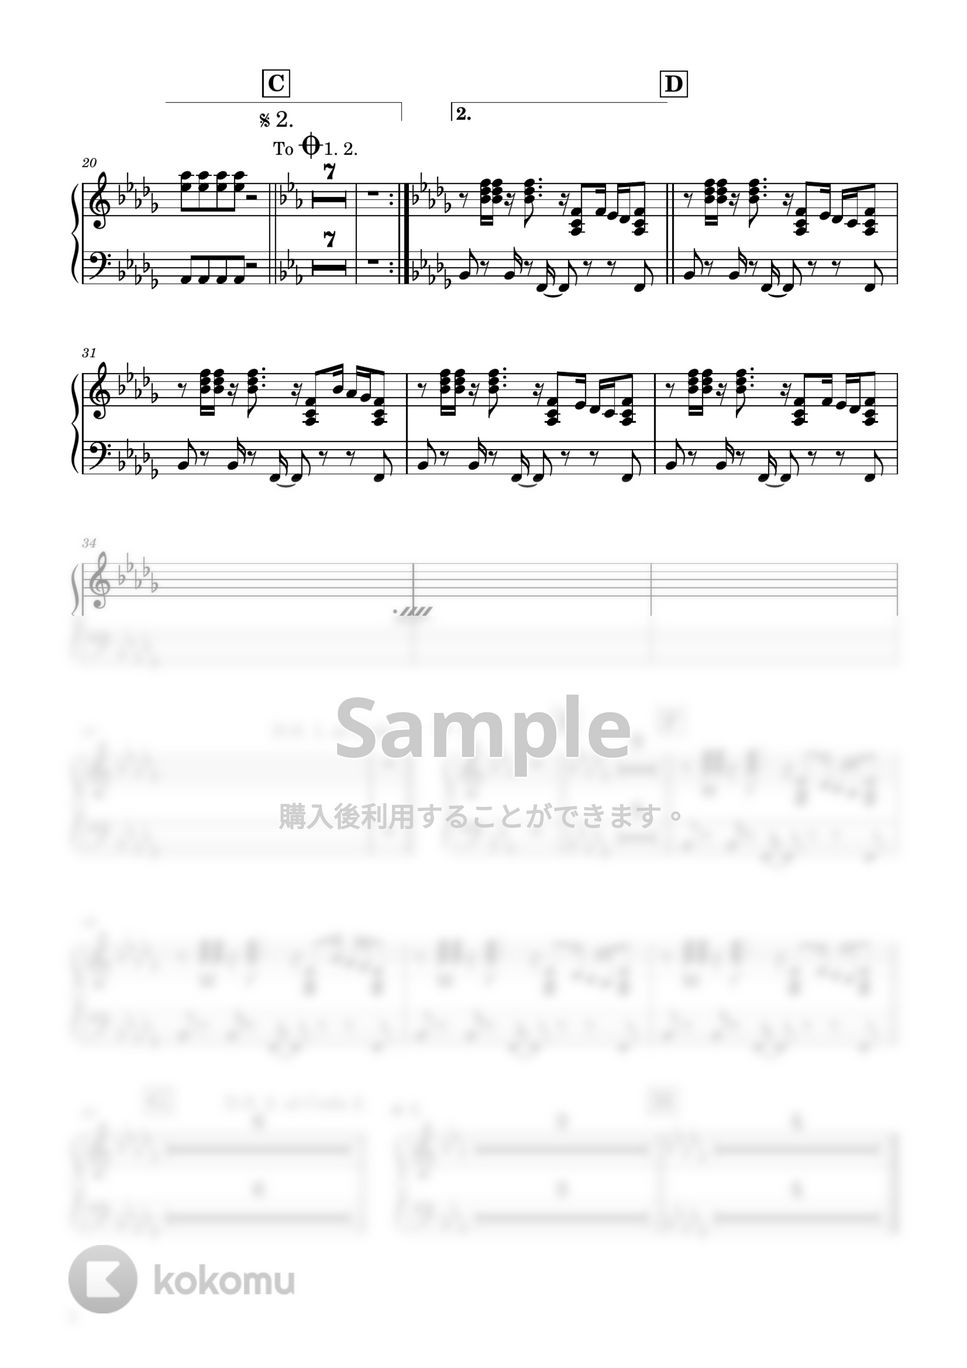 ハチ - 砂の惑星 (ピアノパート) by Ray